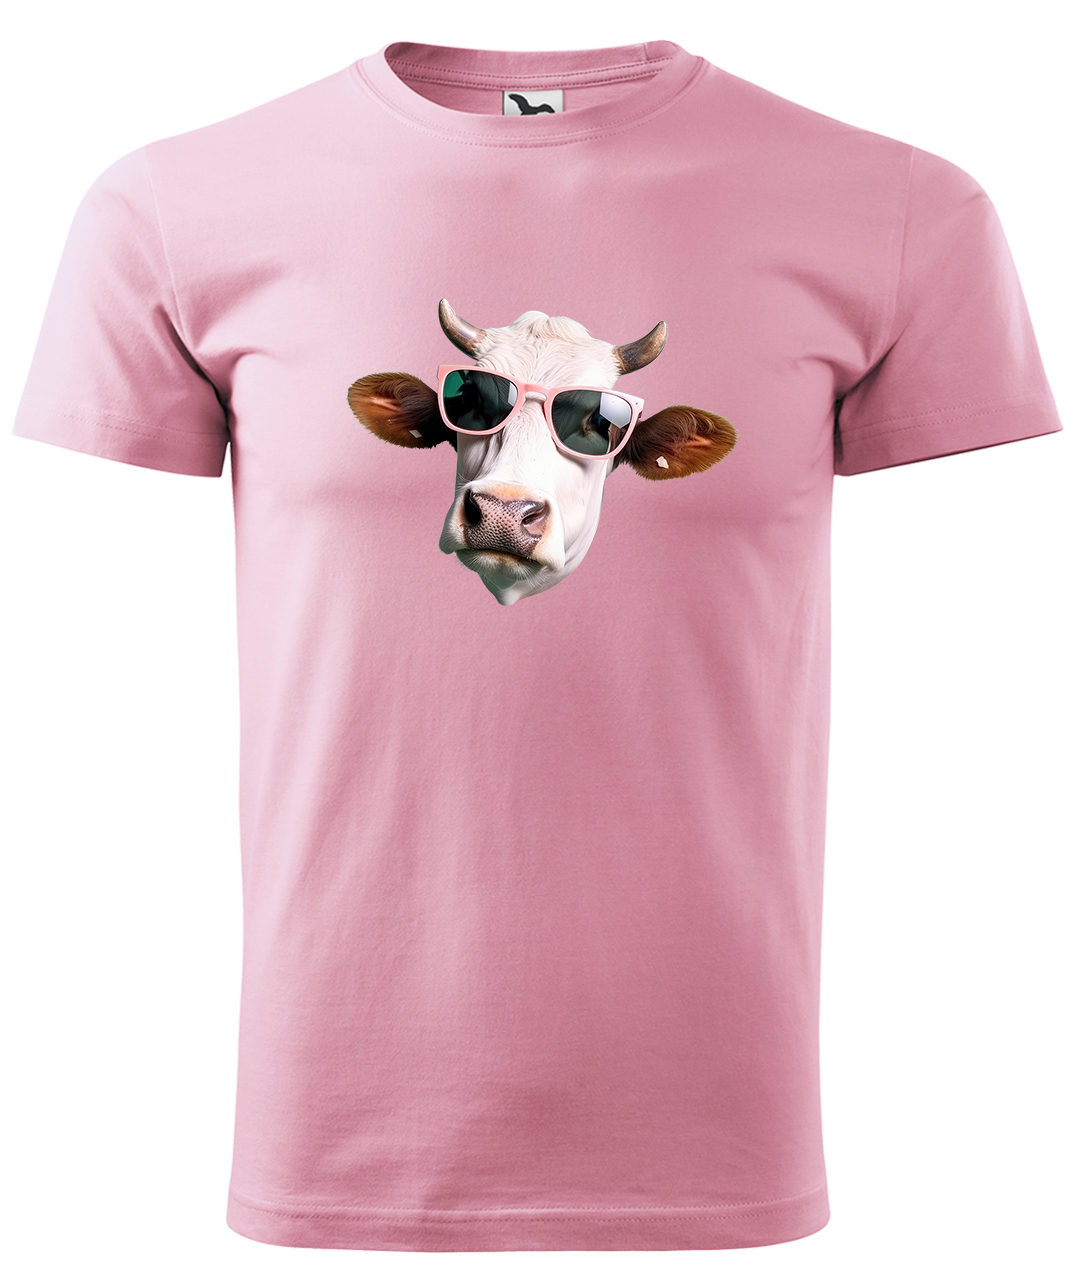 Dětské tričko s krávou - Kráva v brýlích Velikost: 8 let / 134 cm, Barva: Růžová (30), Délka rukávu: Krátký rukáv